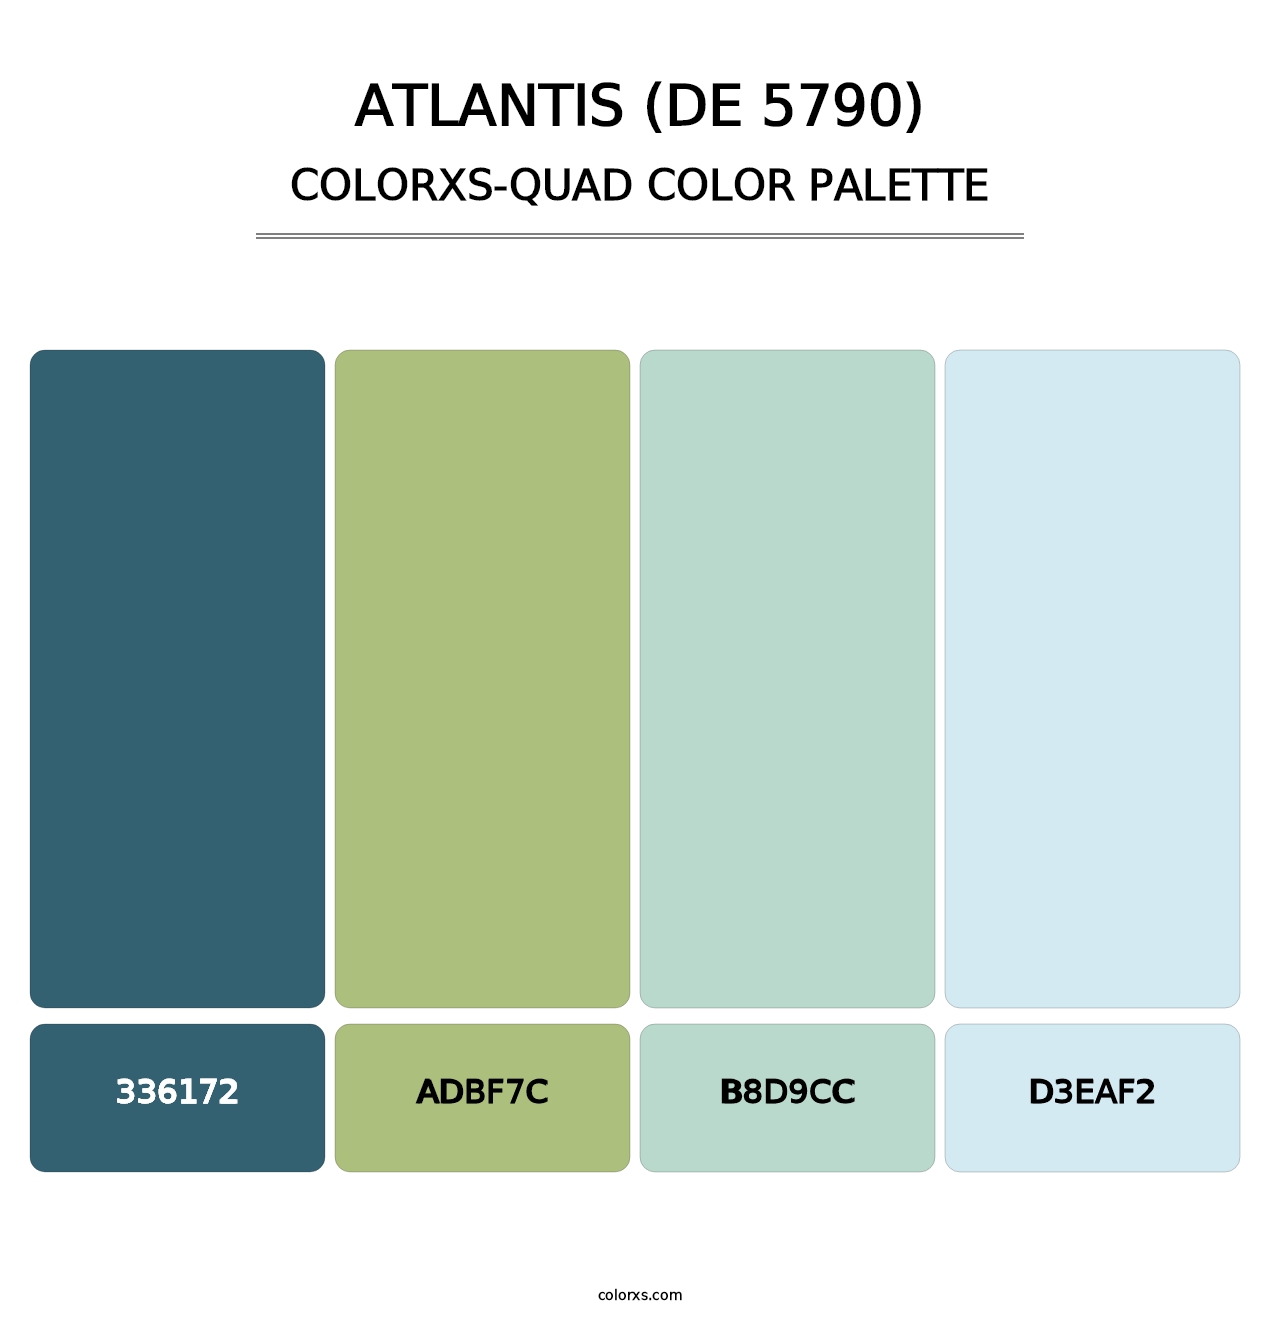 Atlantis (DE 5790) - Colorxs Quad Palette